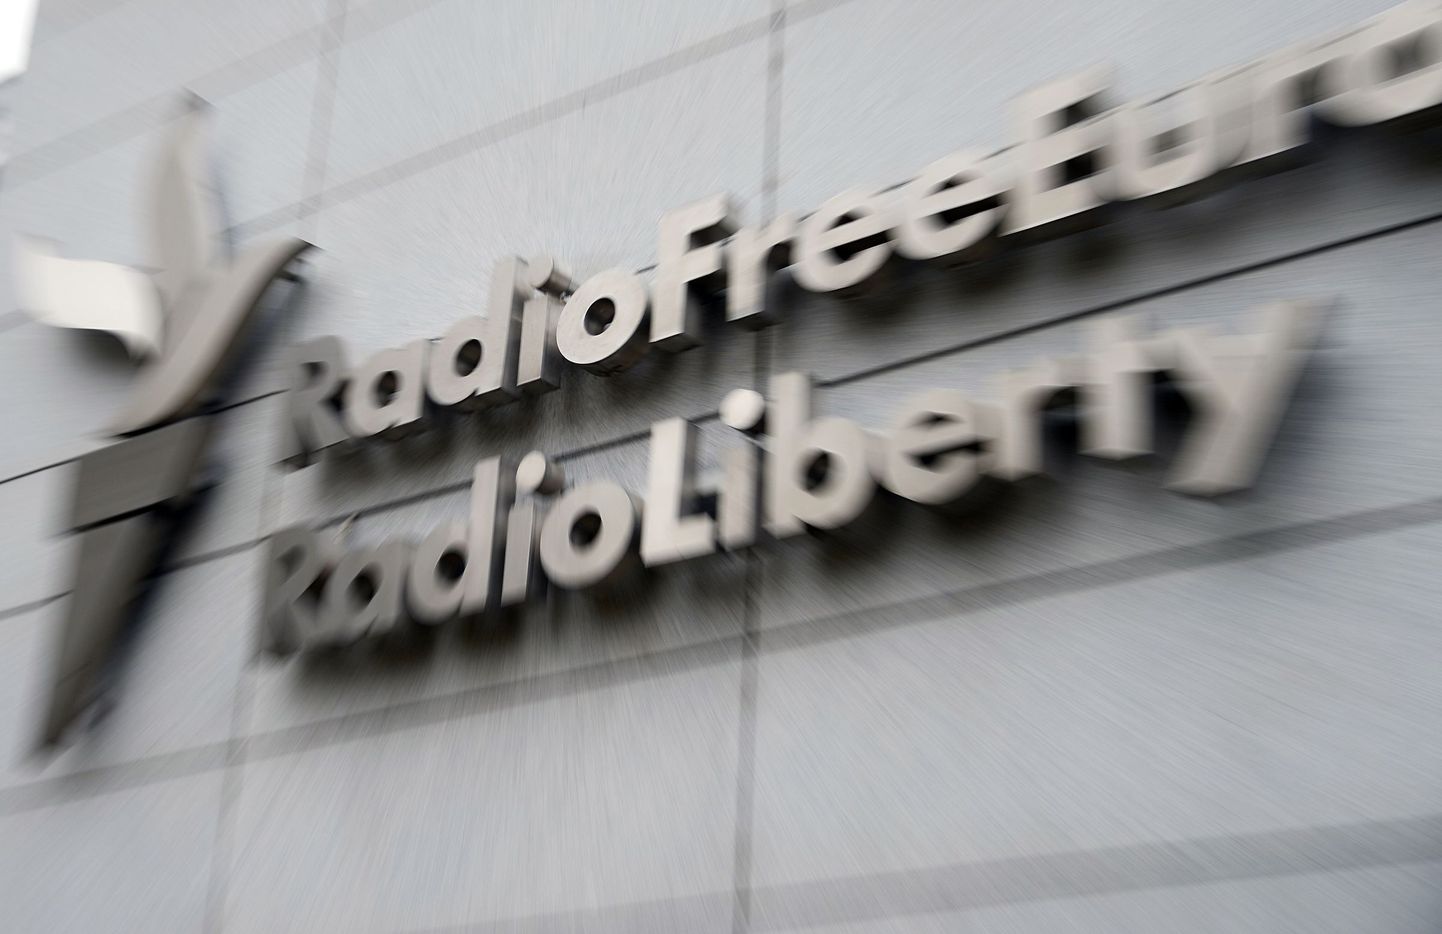 Raadio Vaba Euroopa/Raadio Vabadus hoone Prahas.